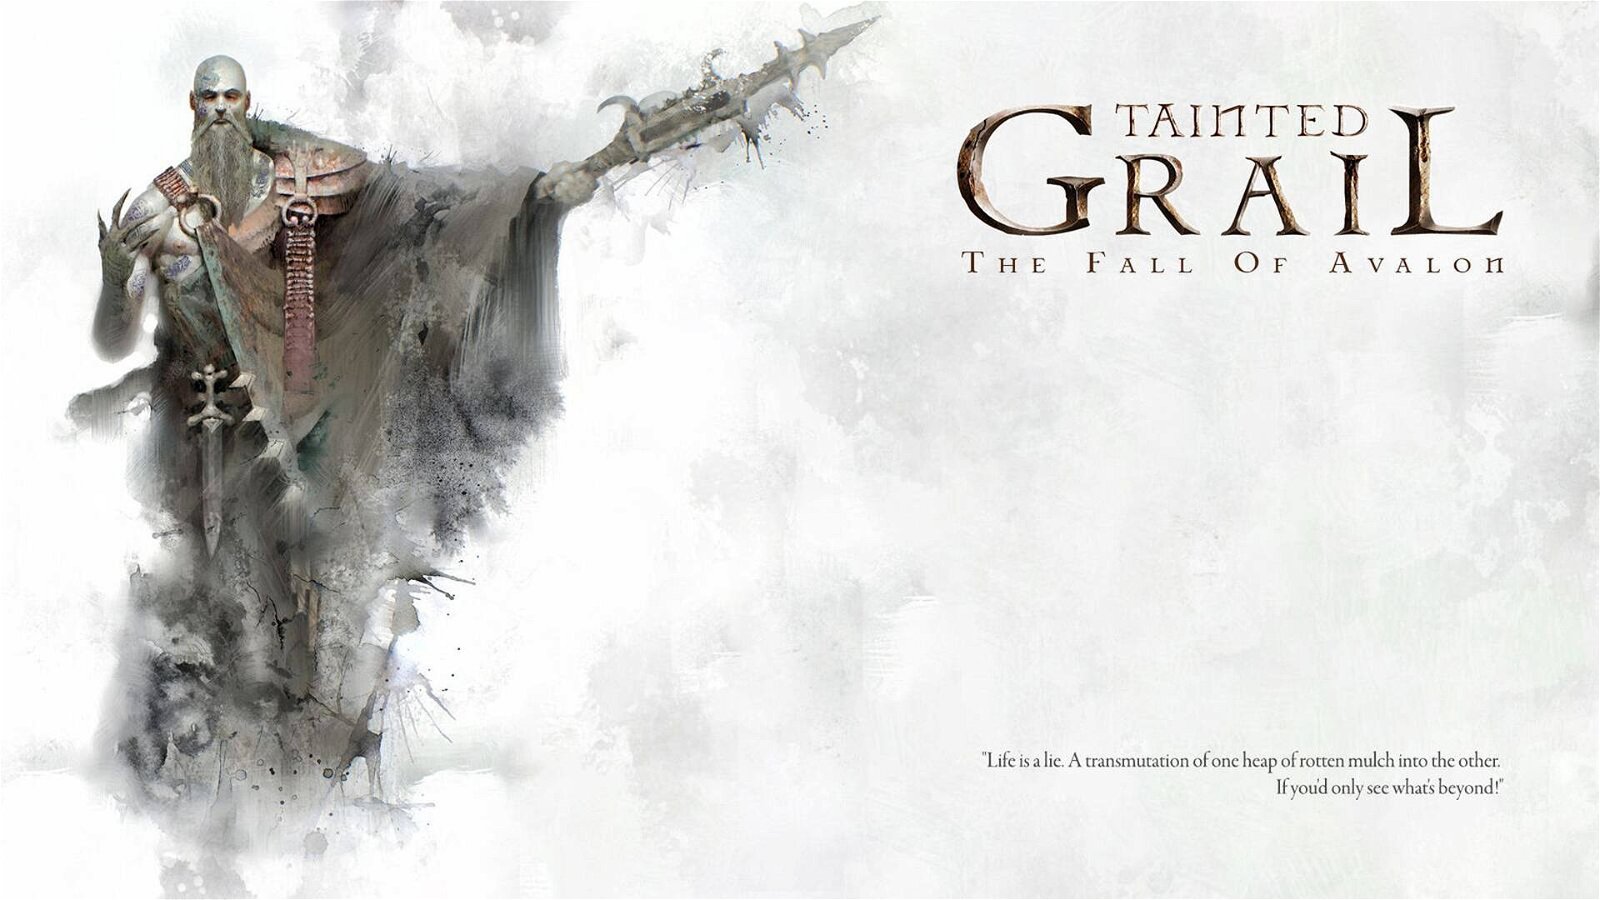 Immagine di Tainted Grail, in arrivo l’edizione retail italiana a opera di Giochi Uniti